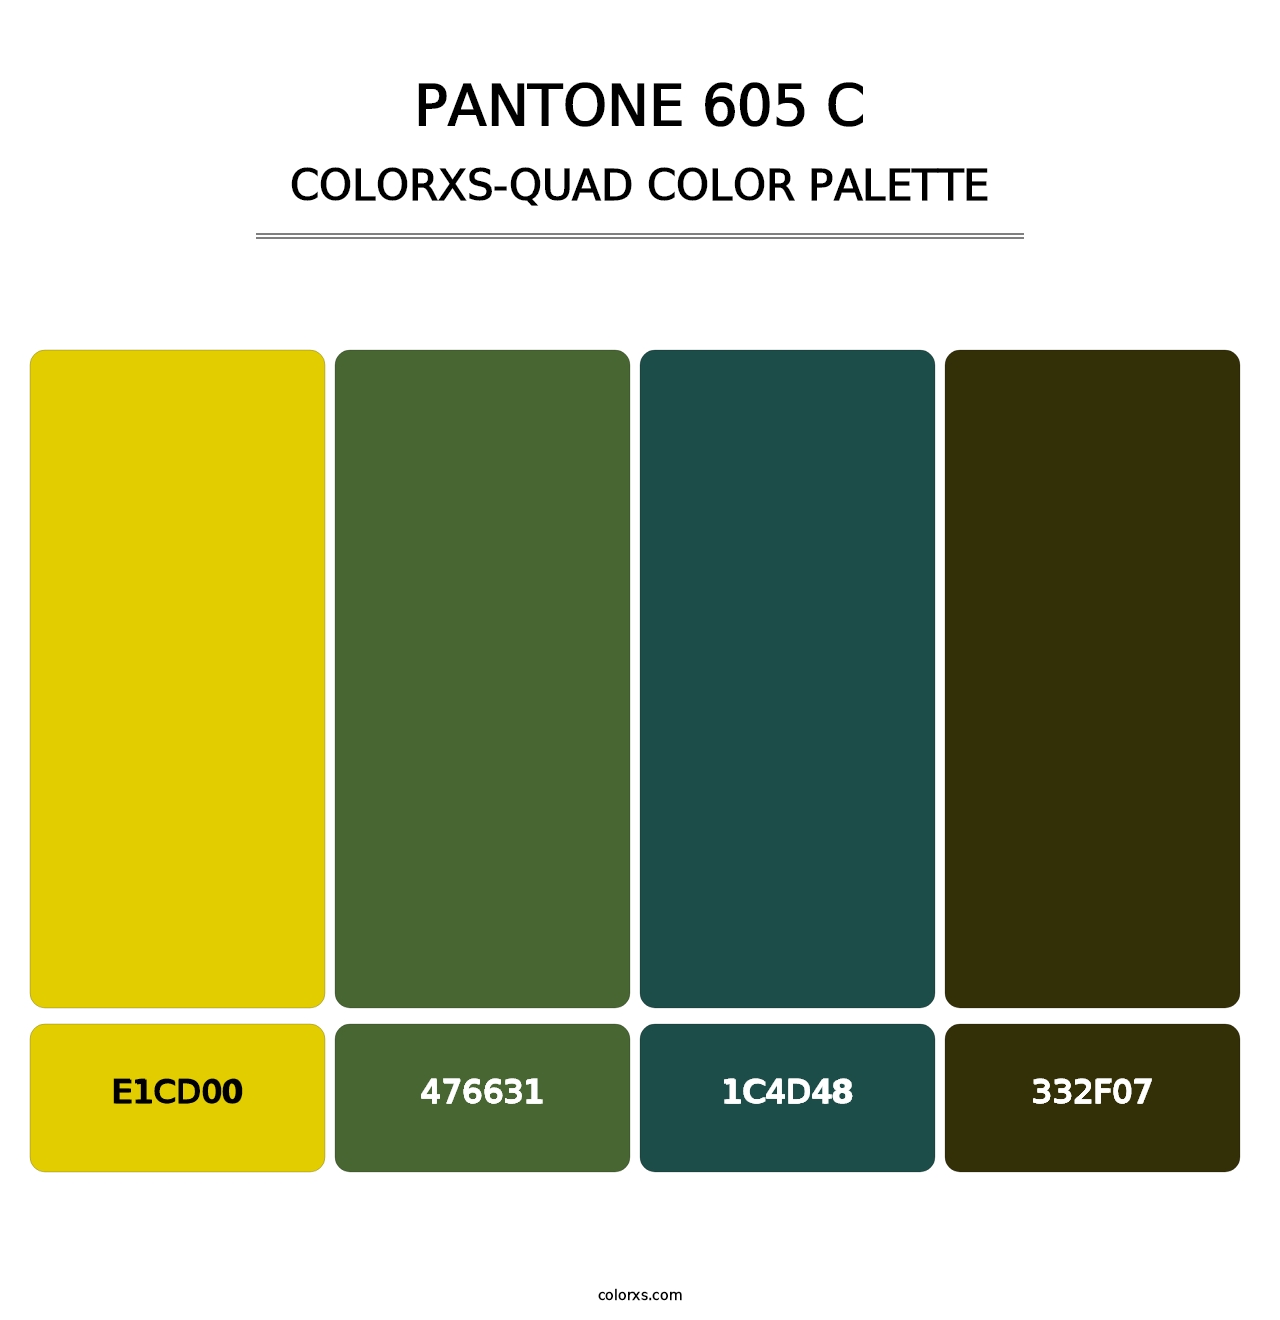 PANTONE 605 C - Colorxs Quad Palette